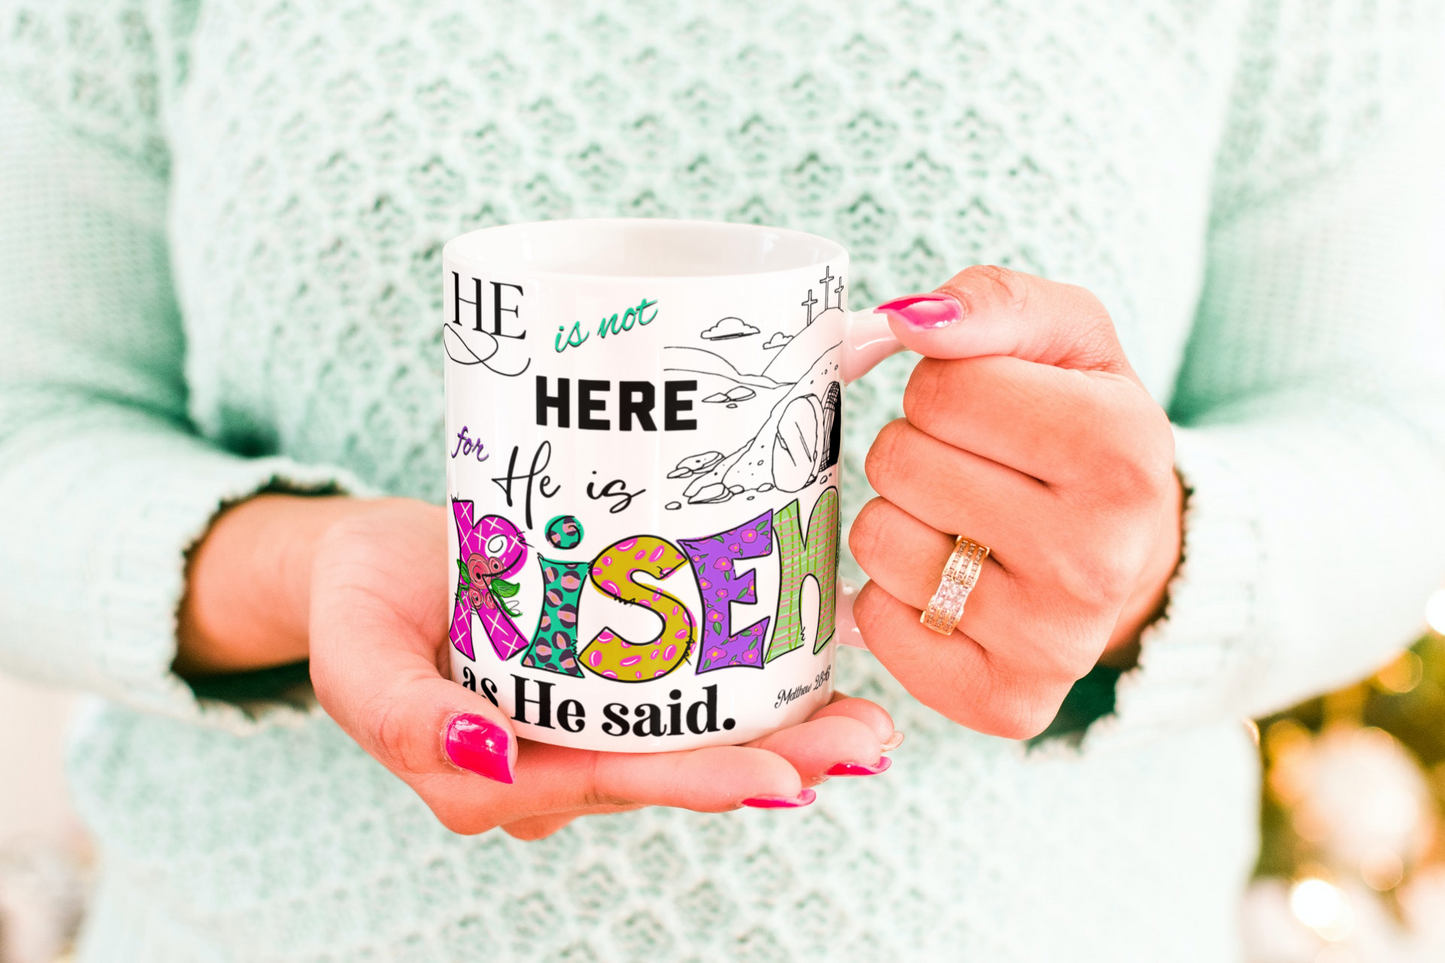 He Is Not Here For He Is Risen 11 oz Ceramic Coffee Mug | He Is Risen Easter Mug | Christian Faith Mug | KJV Scripture Mug